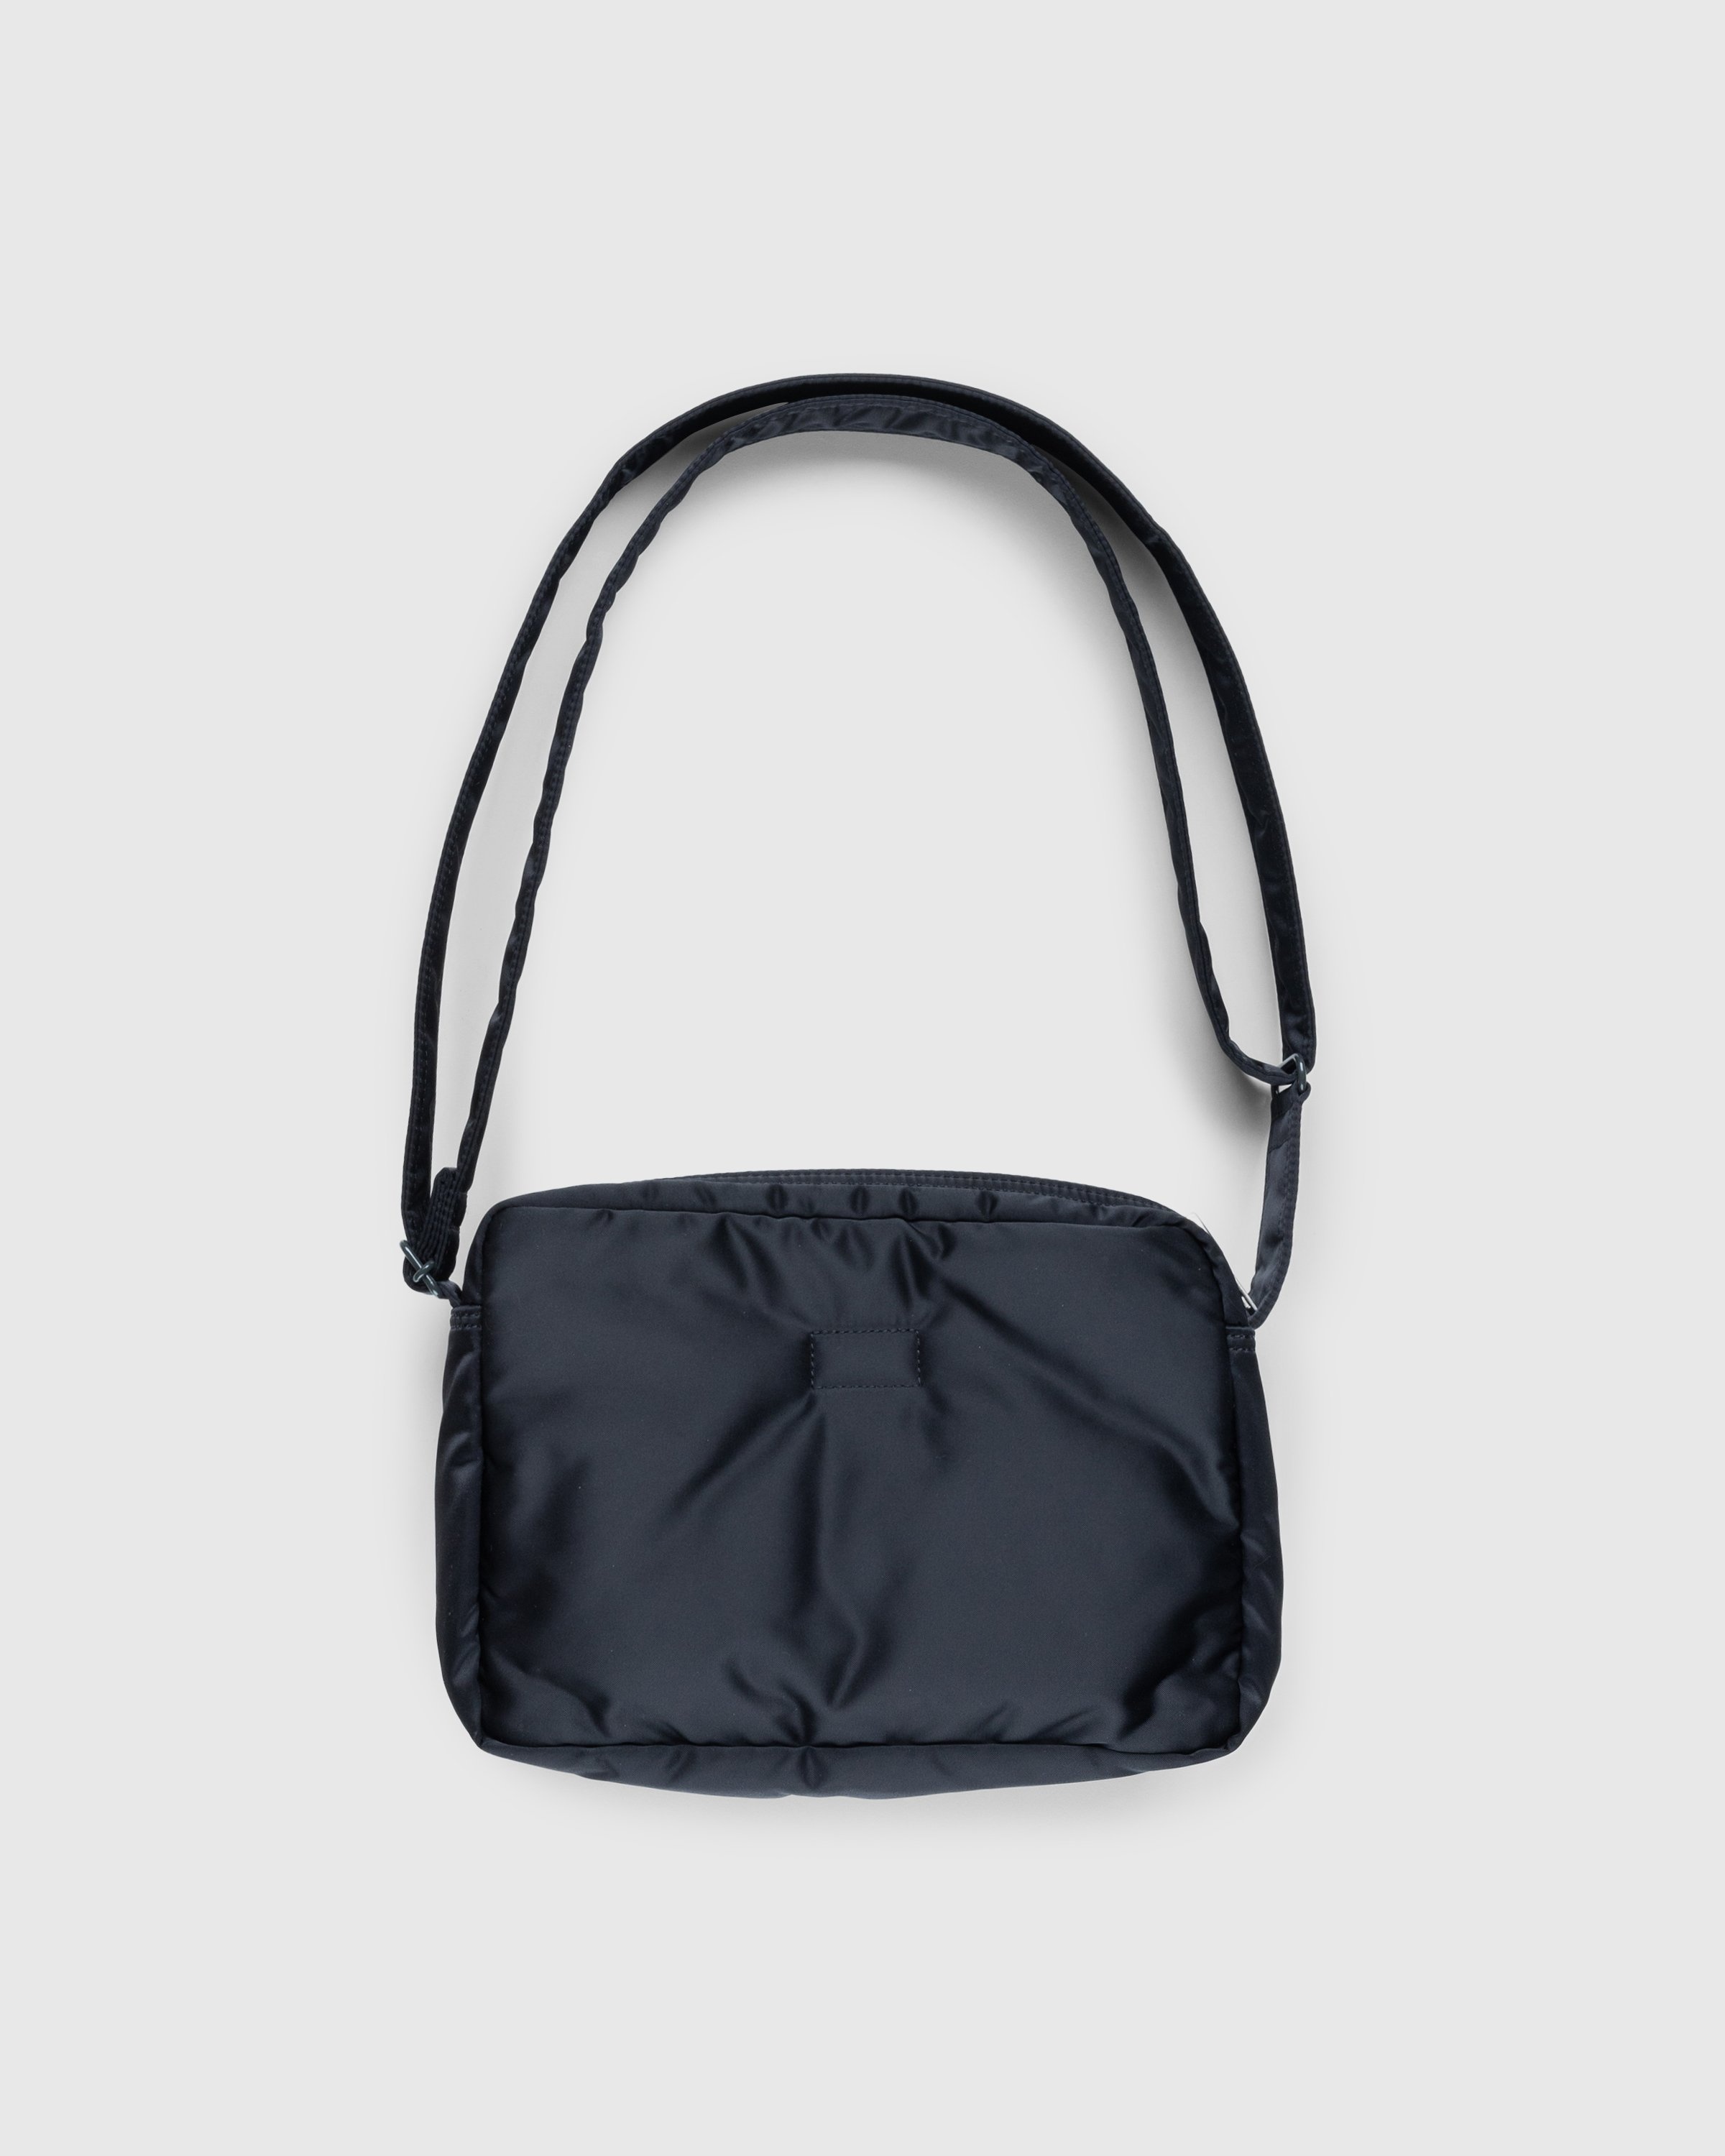 Porter - Yoshida & Co. - Tanker Shoulder Bag - Black